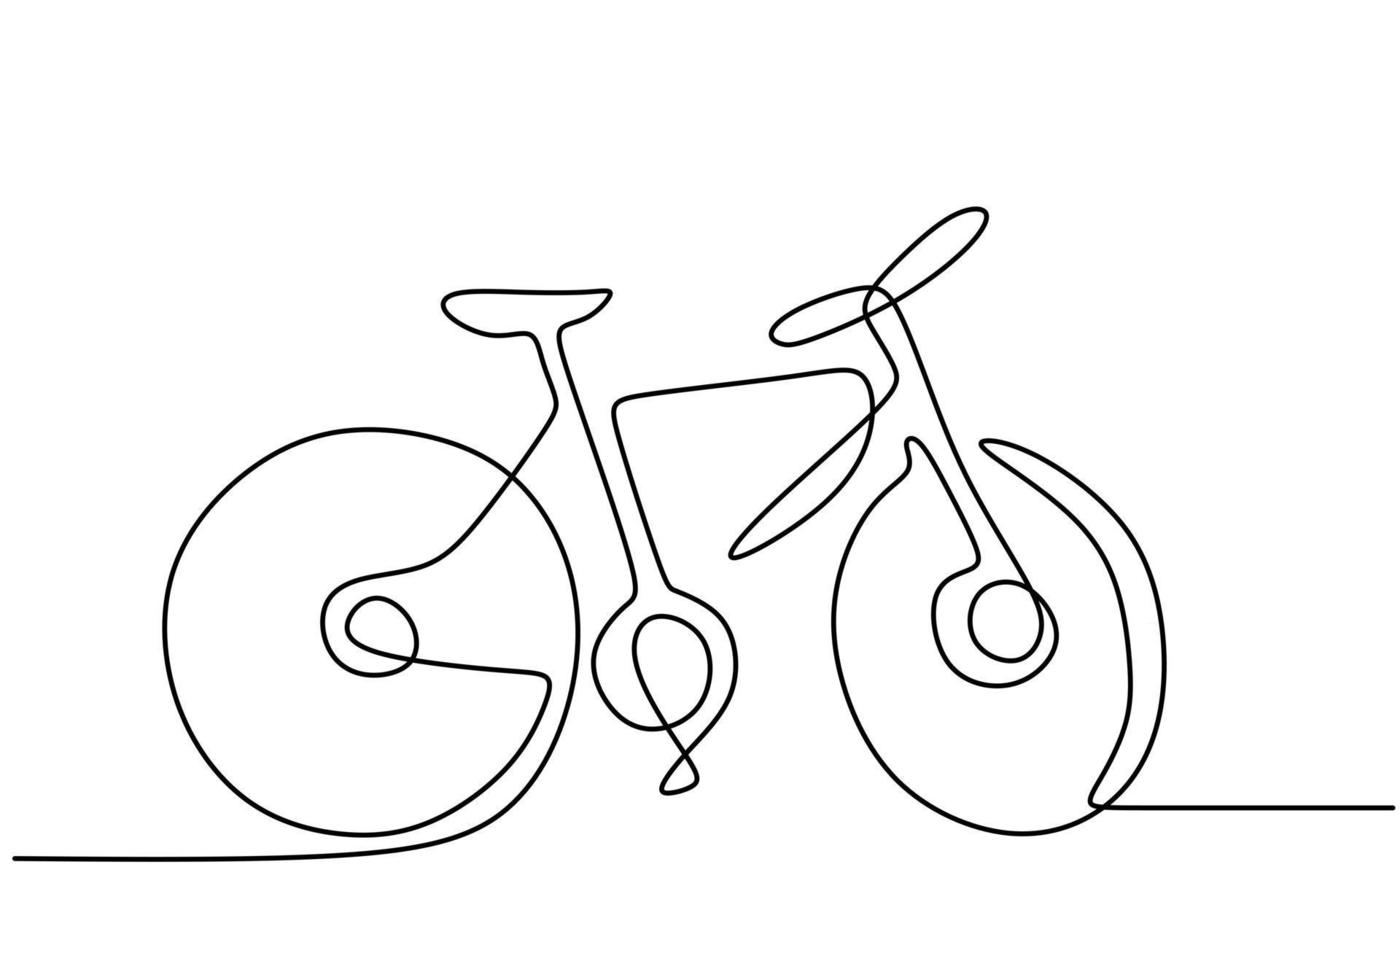 kontinuierliche einzelne gezeichnete einzeilige Fahrradhandzeichnung Geschäftskonzeptskizze des Fahrrads ein traditionelles Transportmittel vektor